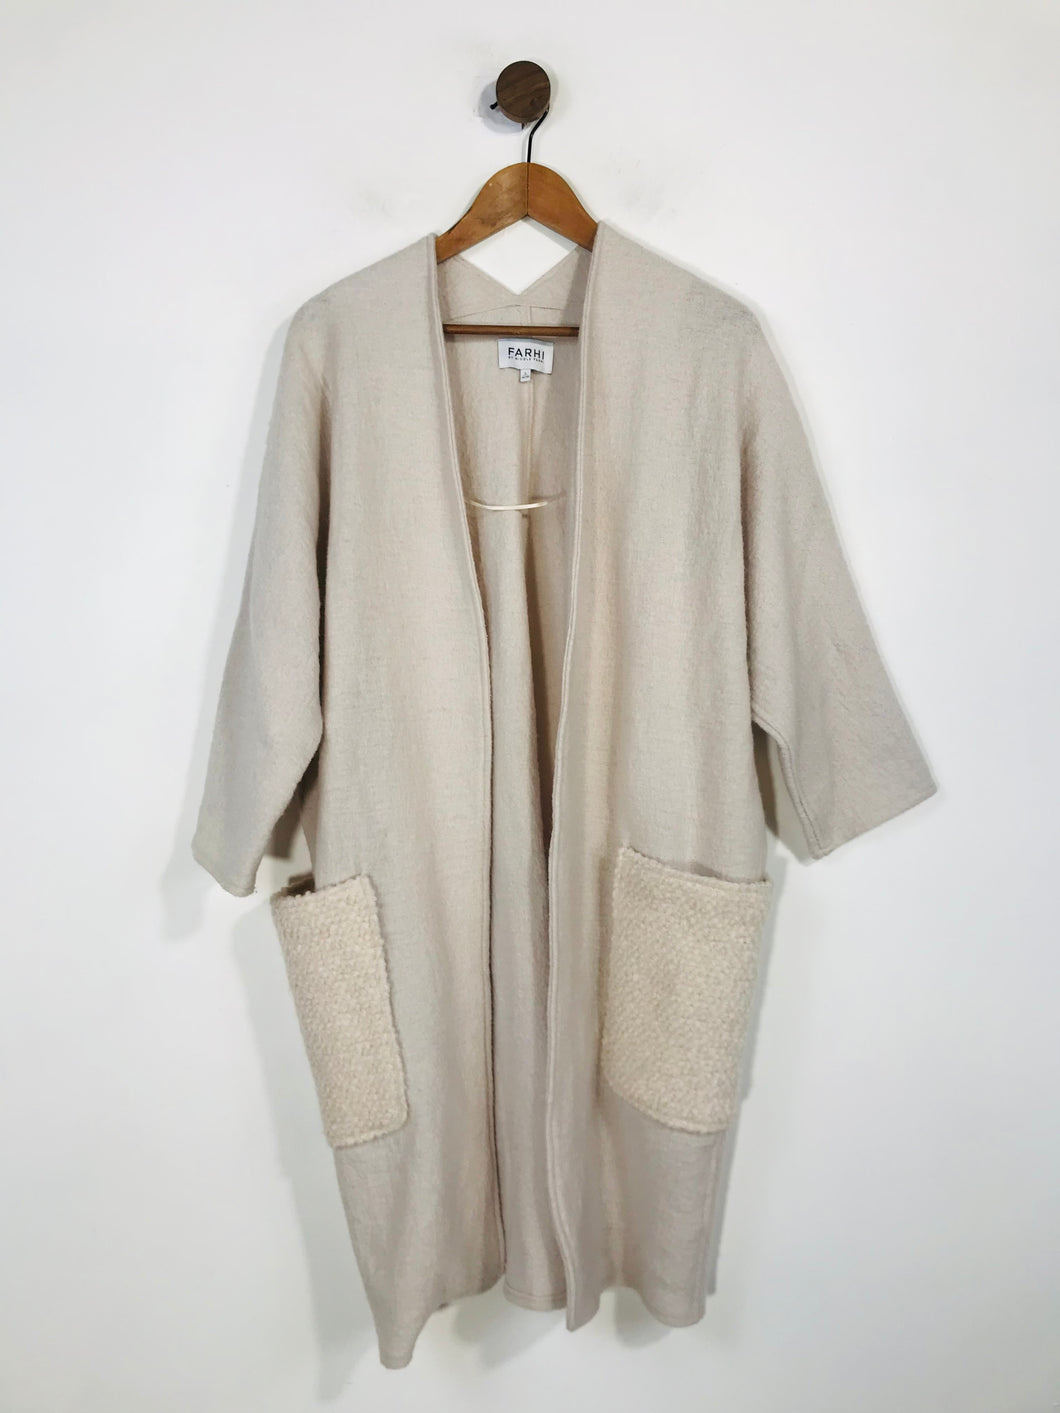 Nicole Farhi Women's Wool Long Cardigan | S UK8 | Beige